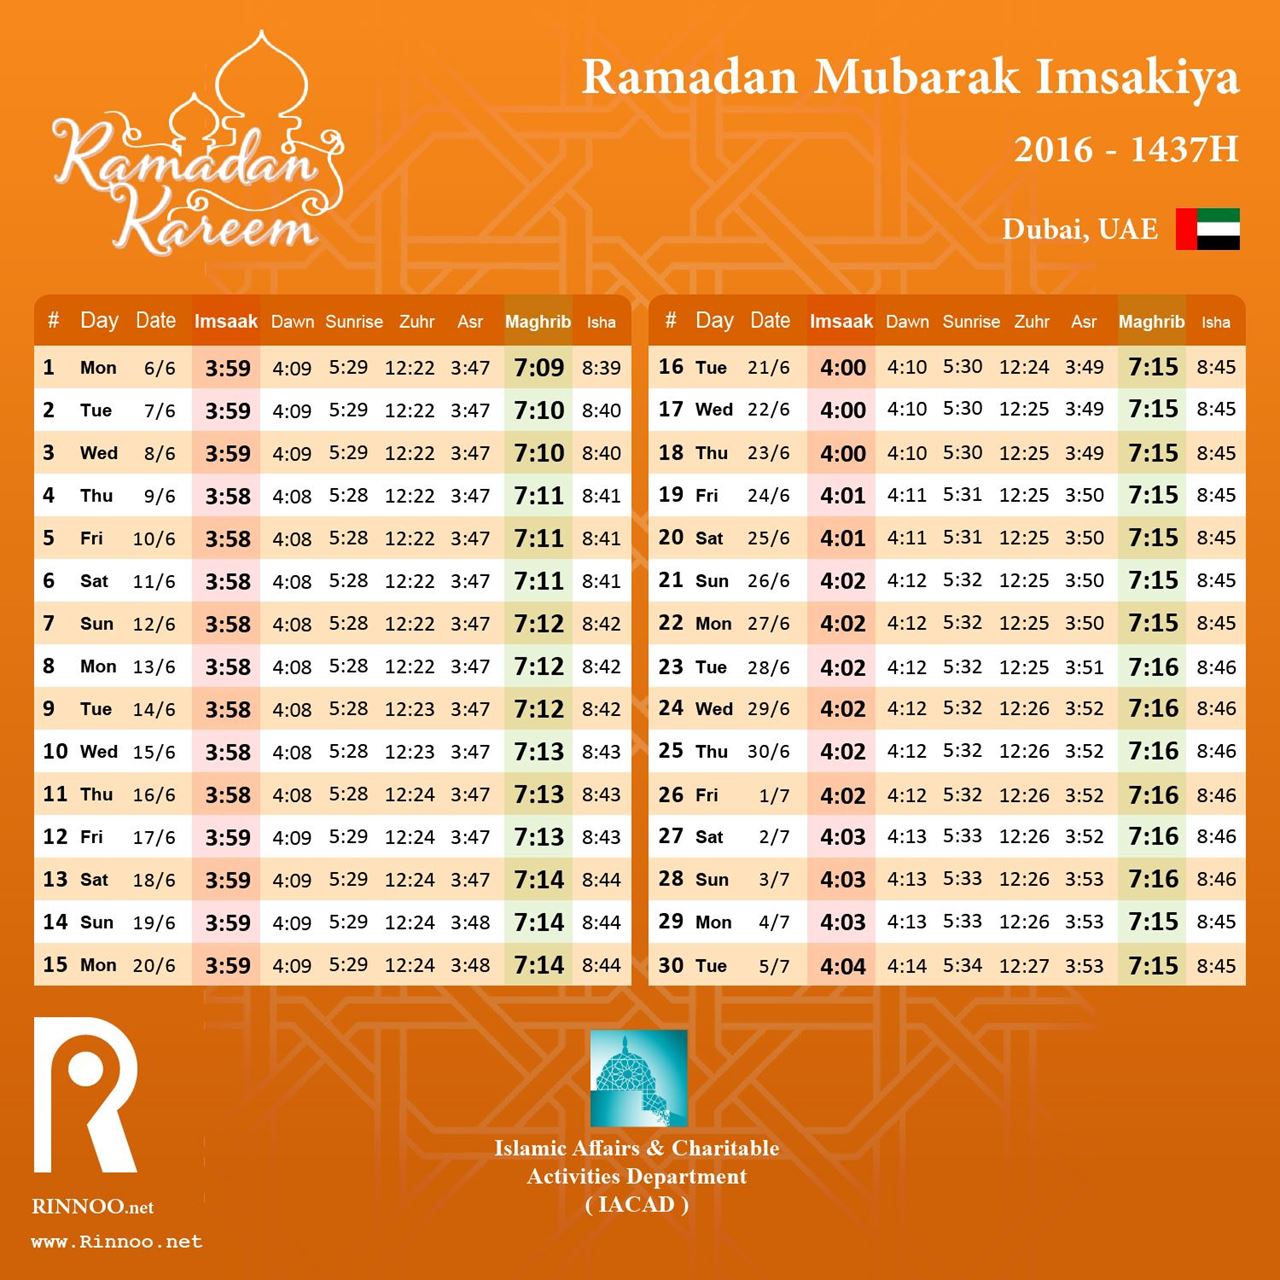 Ramadan 2016 Imsakiya - Dubai, UAE